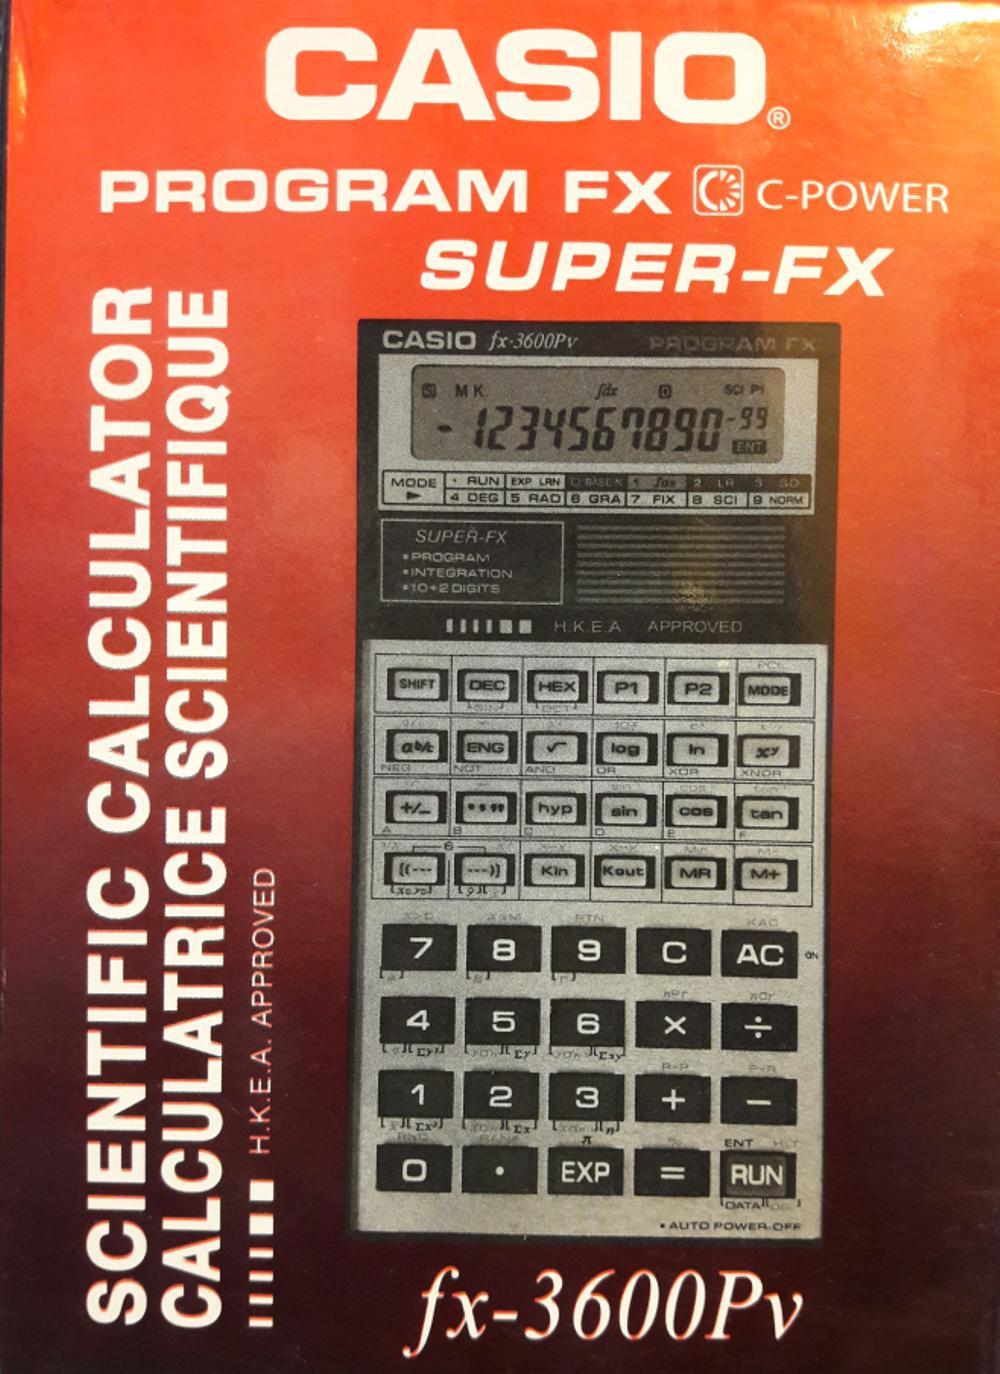 Calculator Casio fx-3600Pv di lapak Kompraya_mediastore johnluis